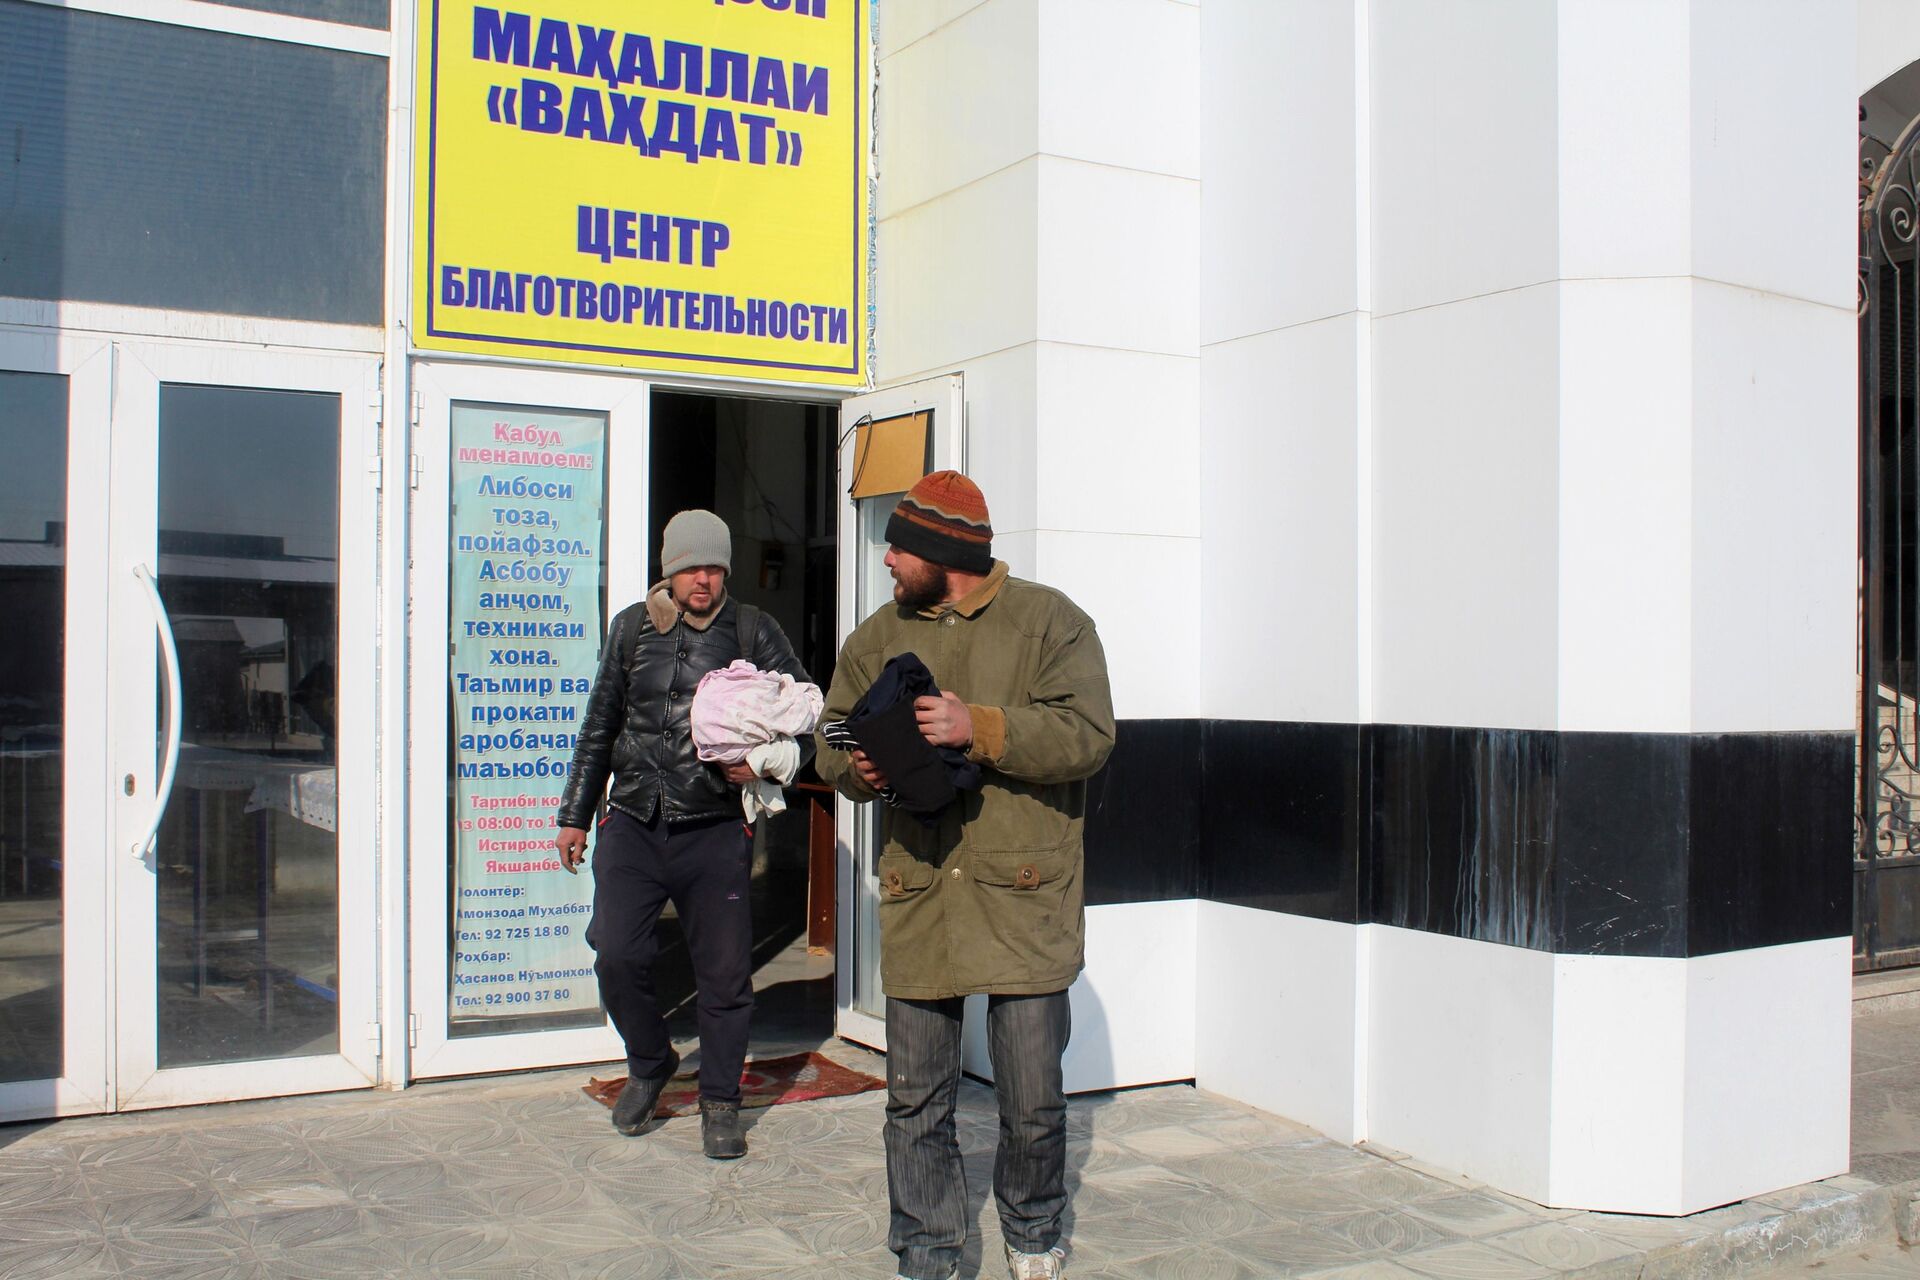 Мужчины у центра благотворительности при мечети Нури Ислом (Свет Ислама) в Худжанде - Sputnik Таджикистан, 1920, 06.04.2021